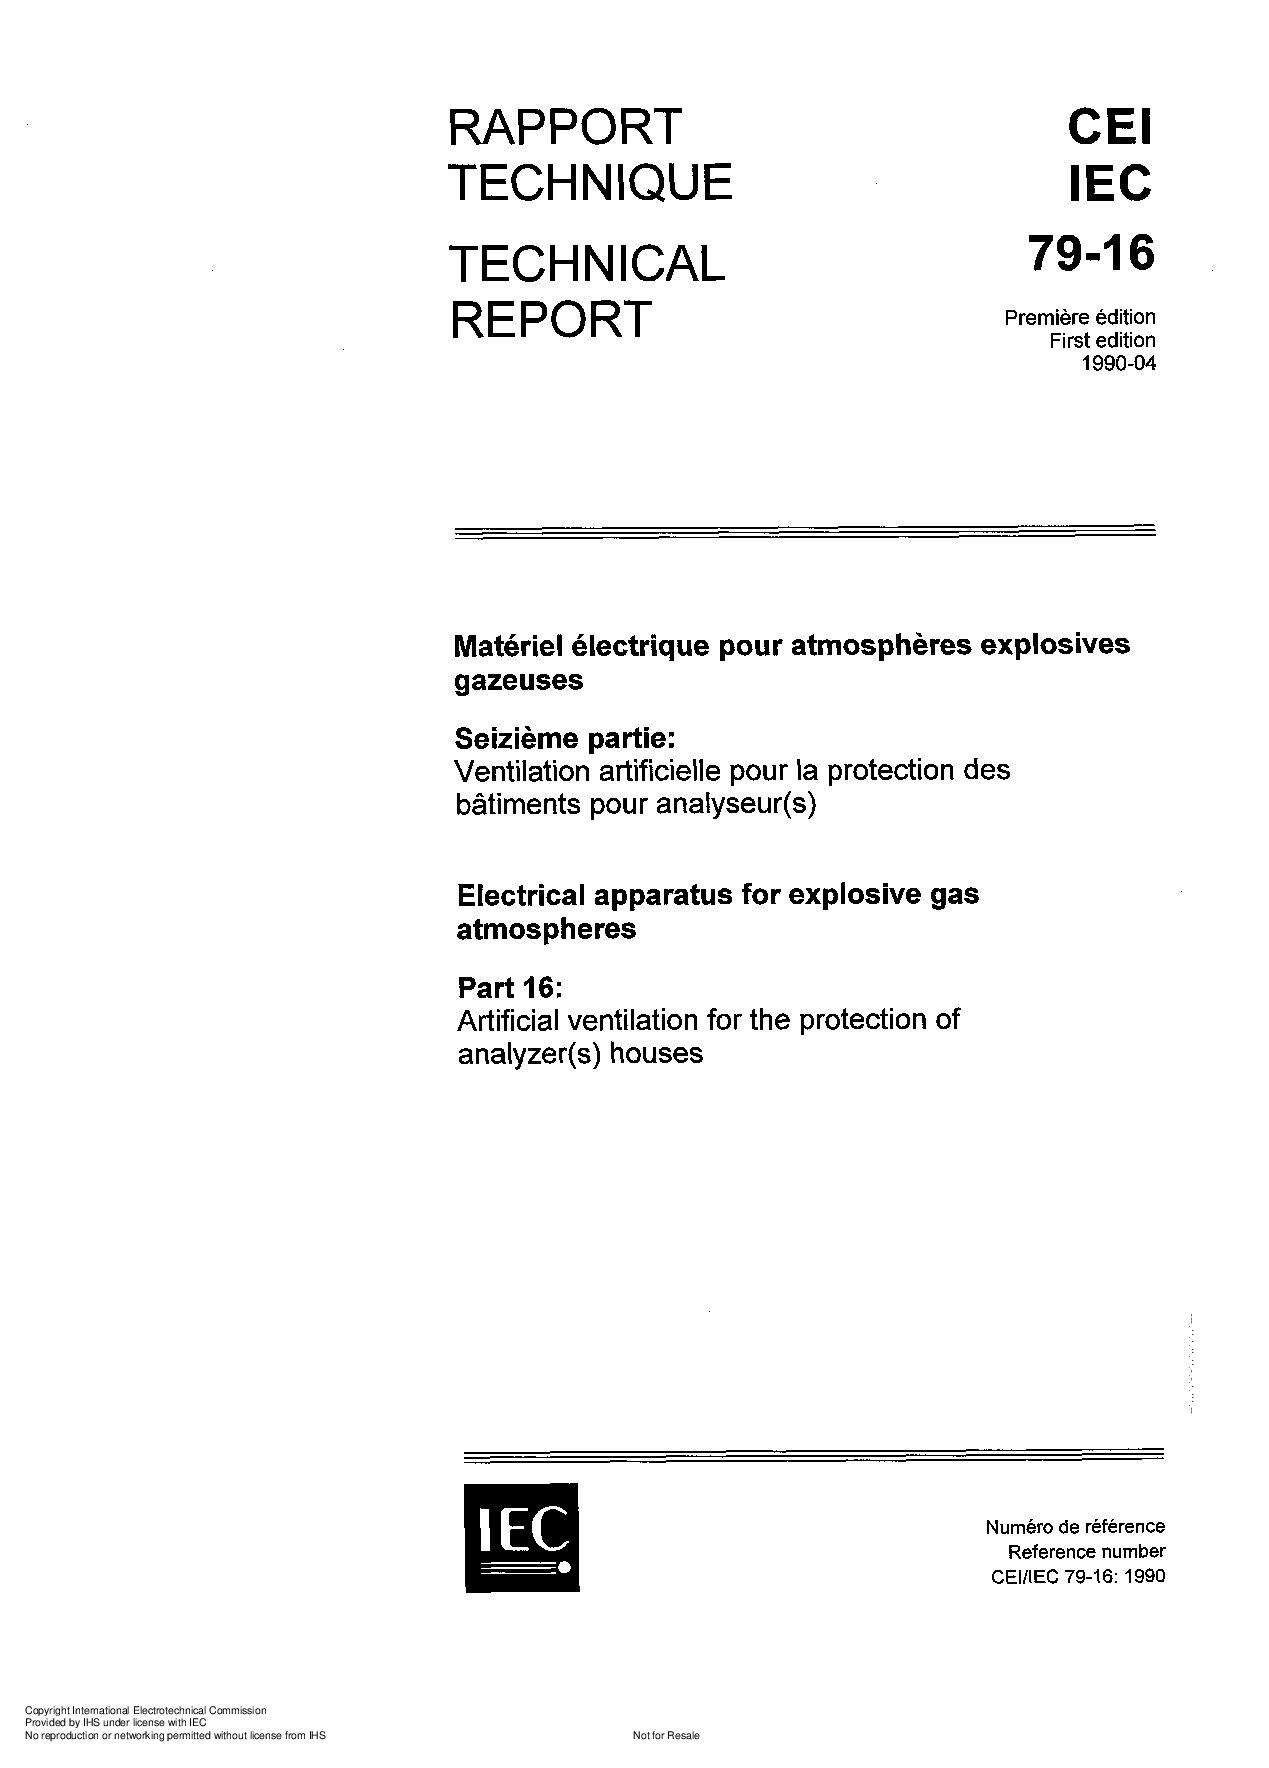 IEC TR 60079-16:1990